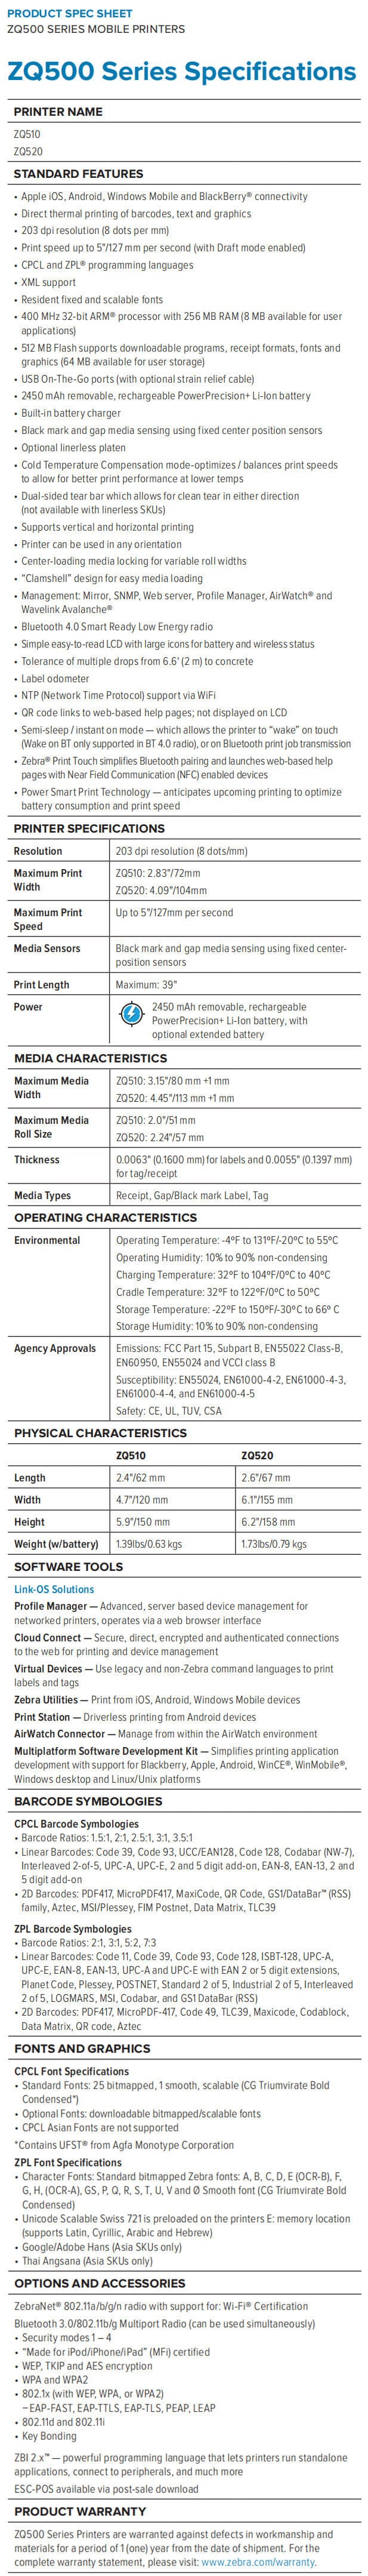 Zebra ZQ520 mobile printer data sheet